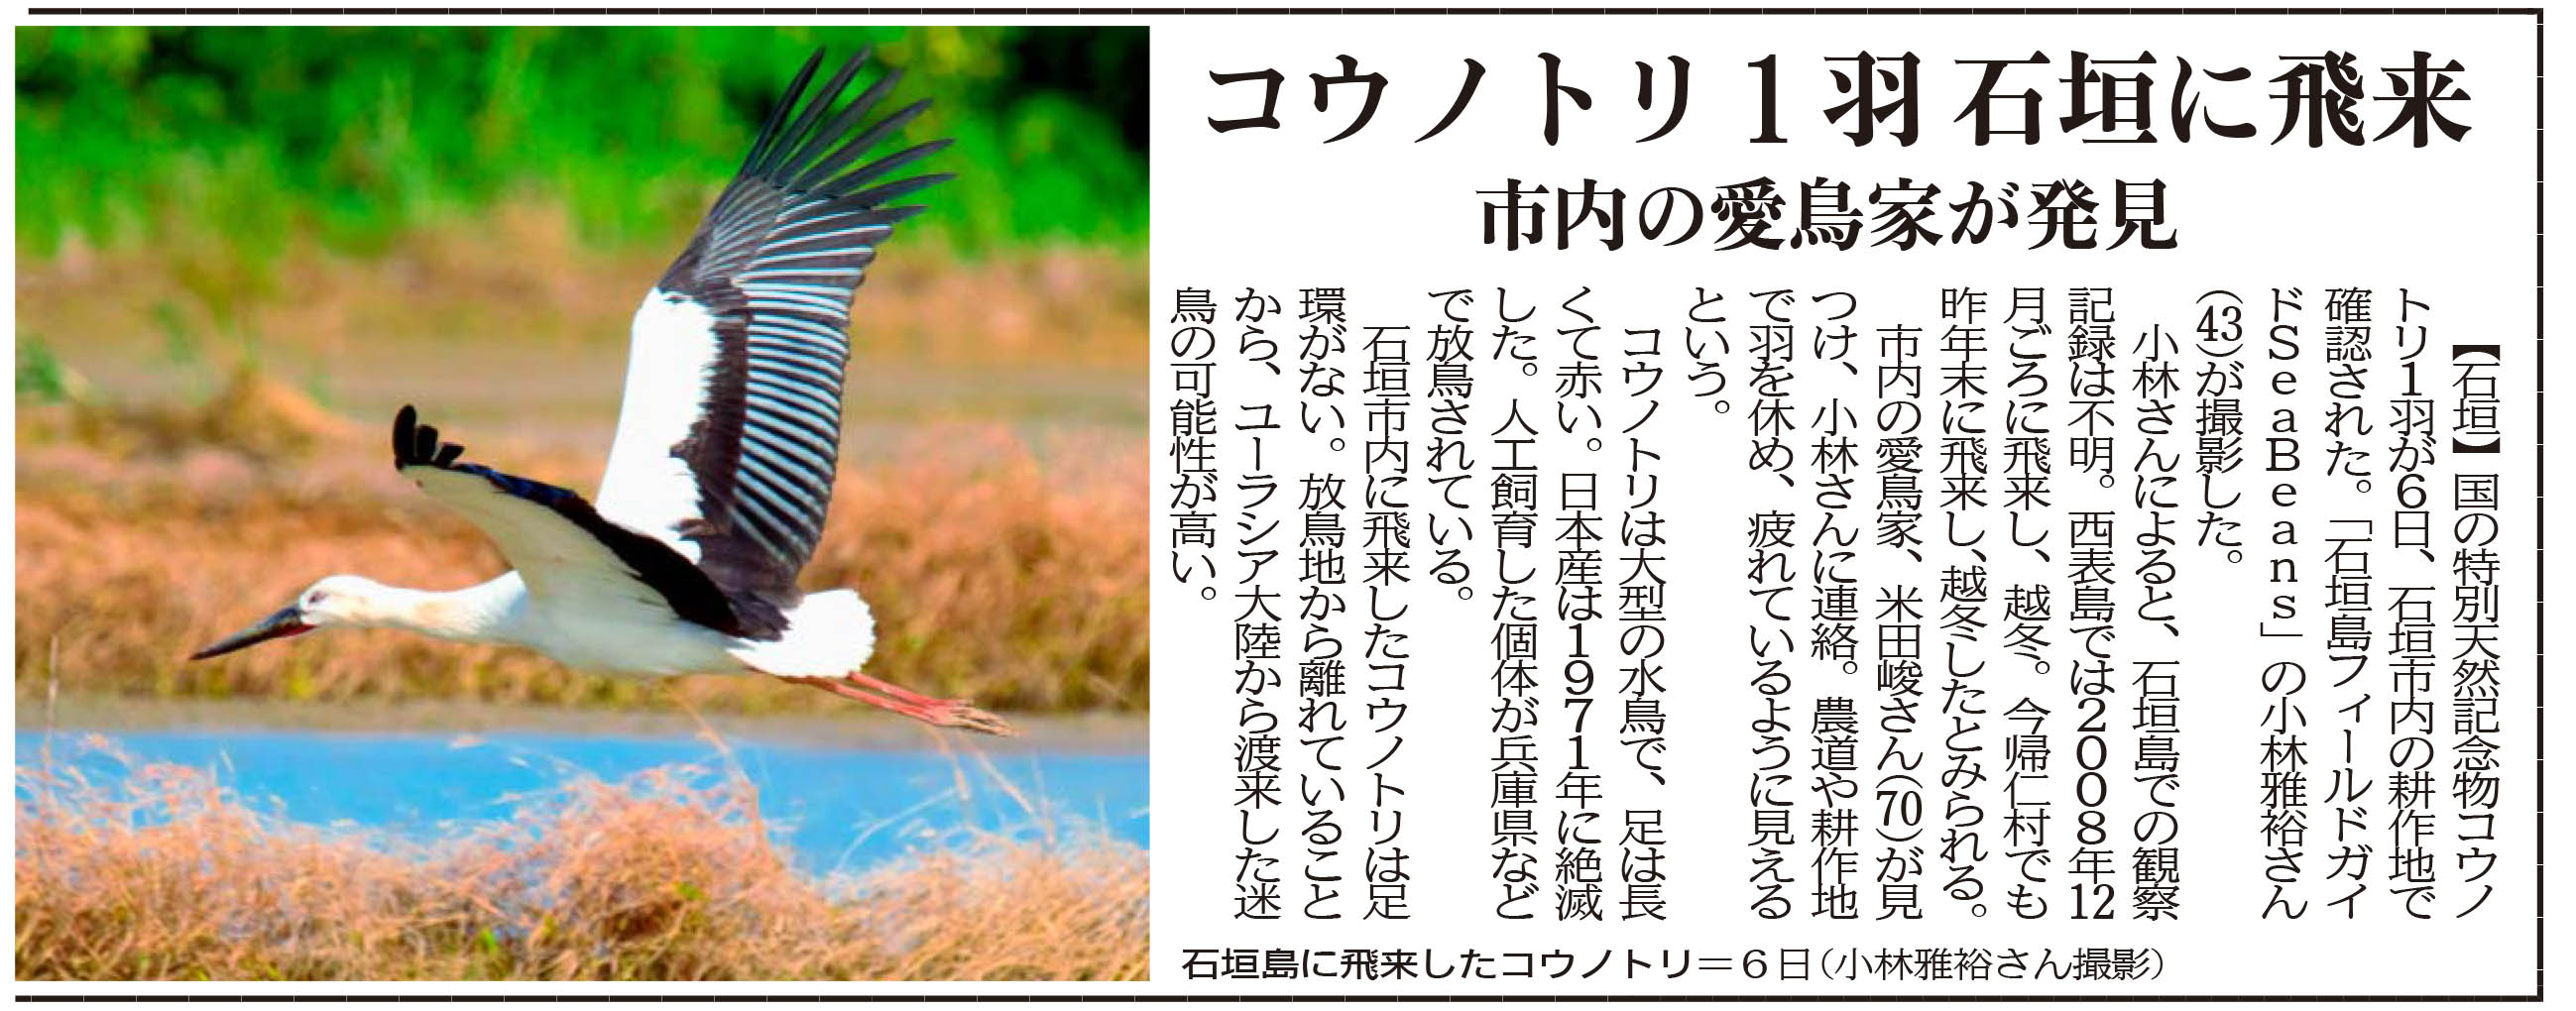 沖縄タイムス朝刊「コウノトリ1羽石垣に飛来」